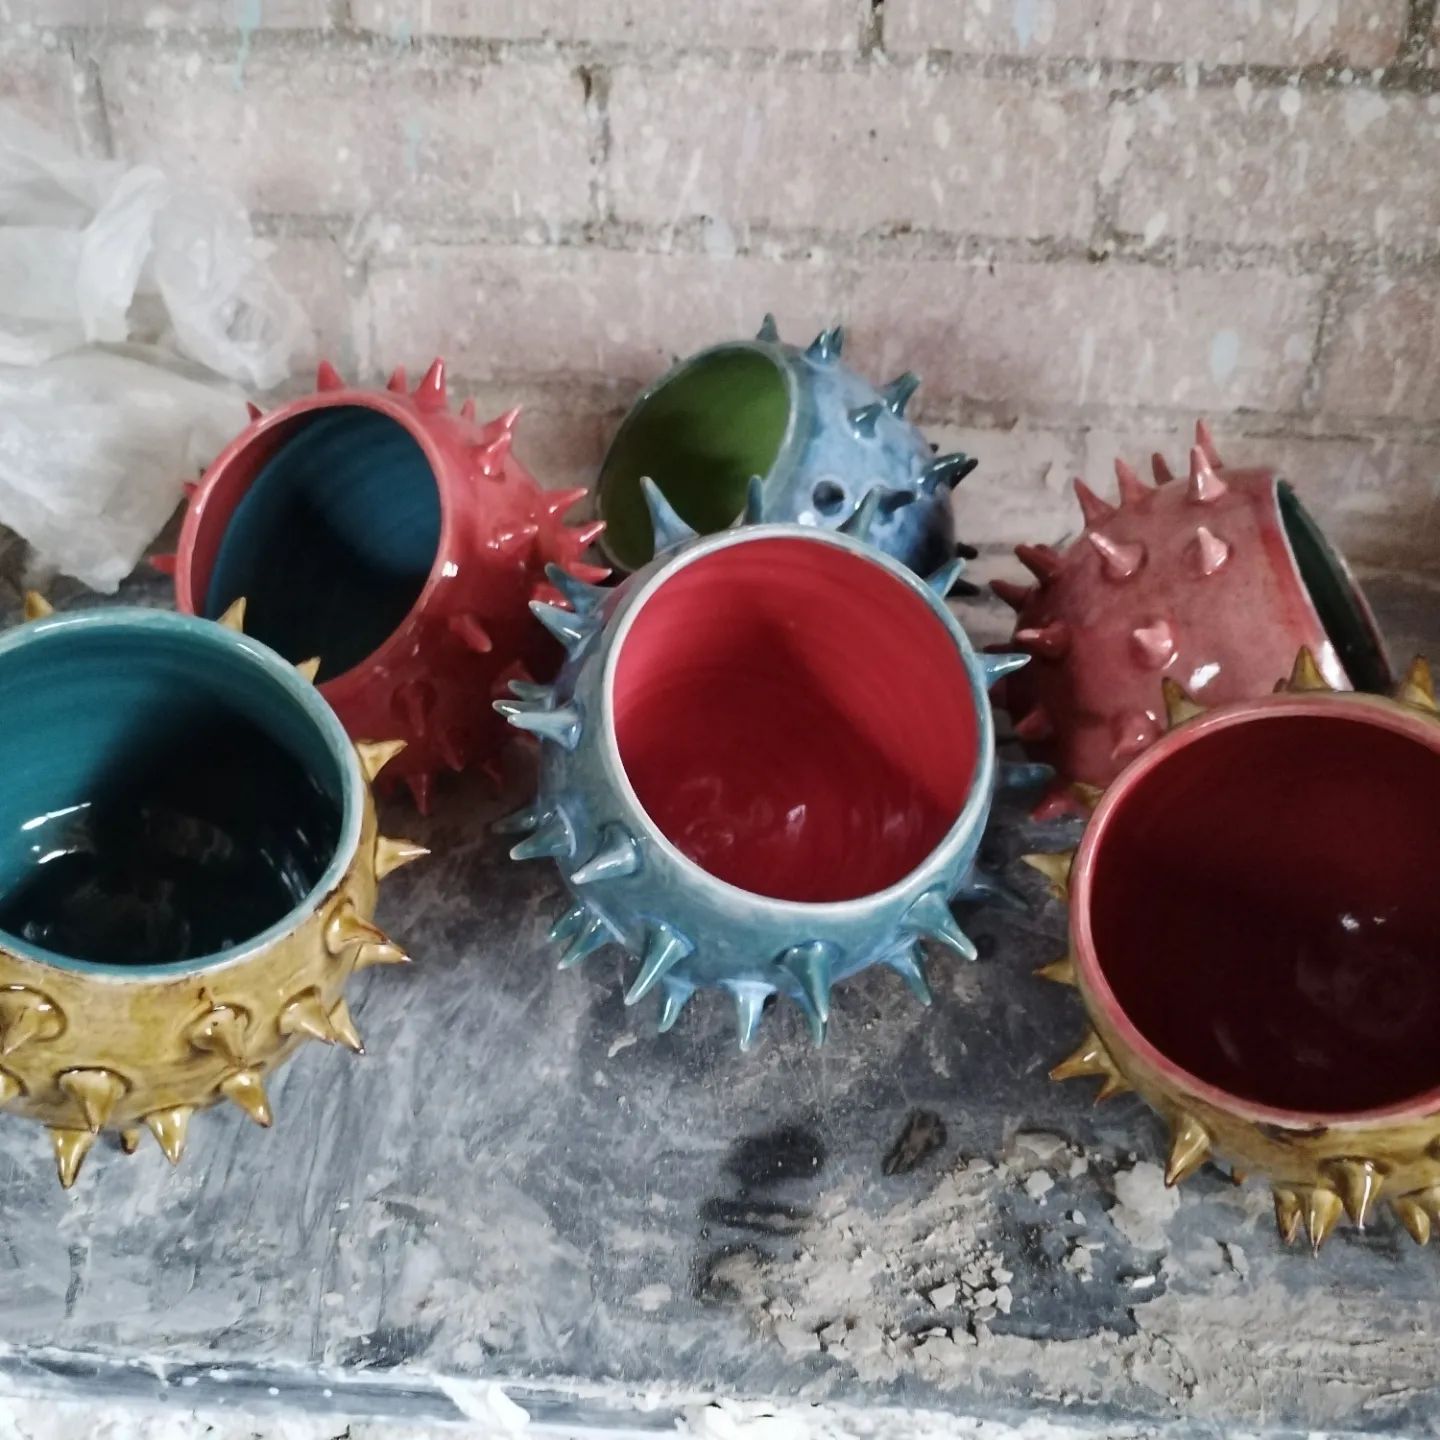 Folkestone Marketplace Pottery Shed Spiky Pots